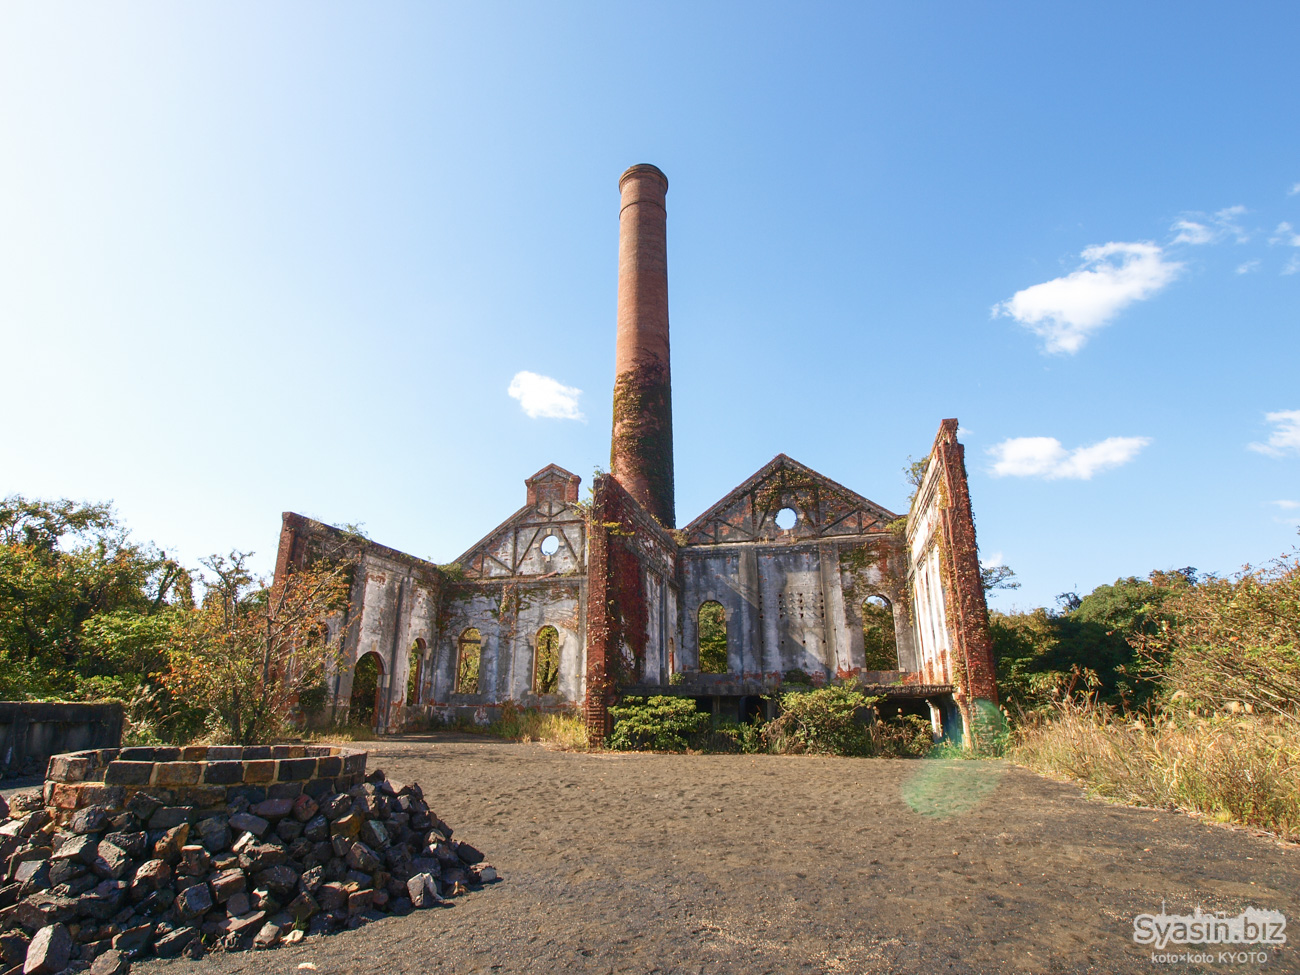 犬島の精錬所跡 – スラグ煉瓦と煙突とアートの島